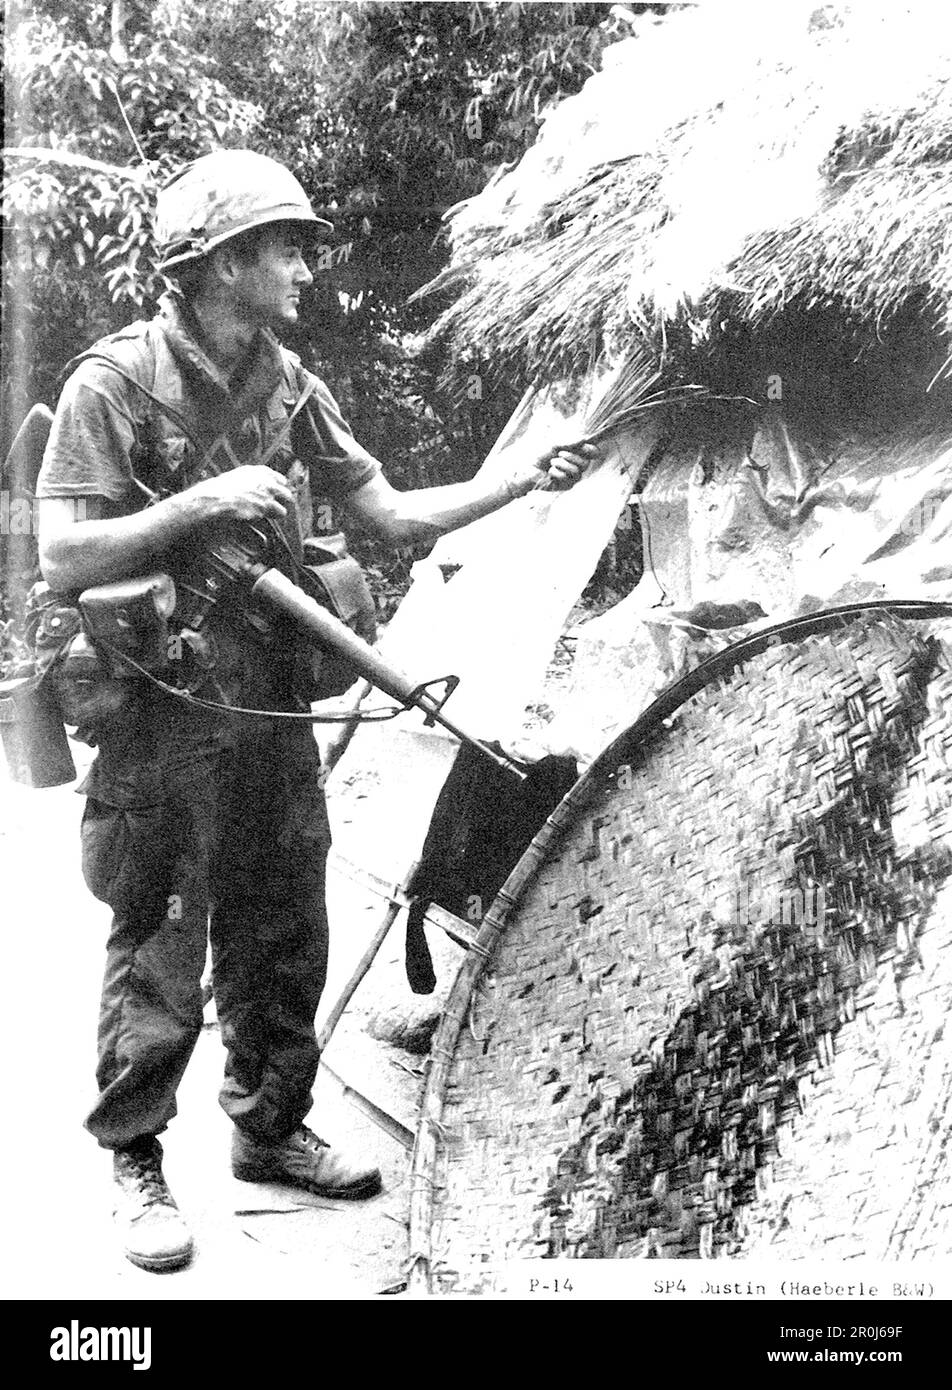 SP4 Dustin zündete eine Wohnung im vietnamesischen Dorf My Lai an, nachdem während des Vietnamkriegs etwa 500 Zivilisten von amerikanischen Truppen massakriert wurden. Stockfoto